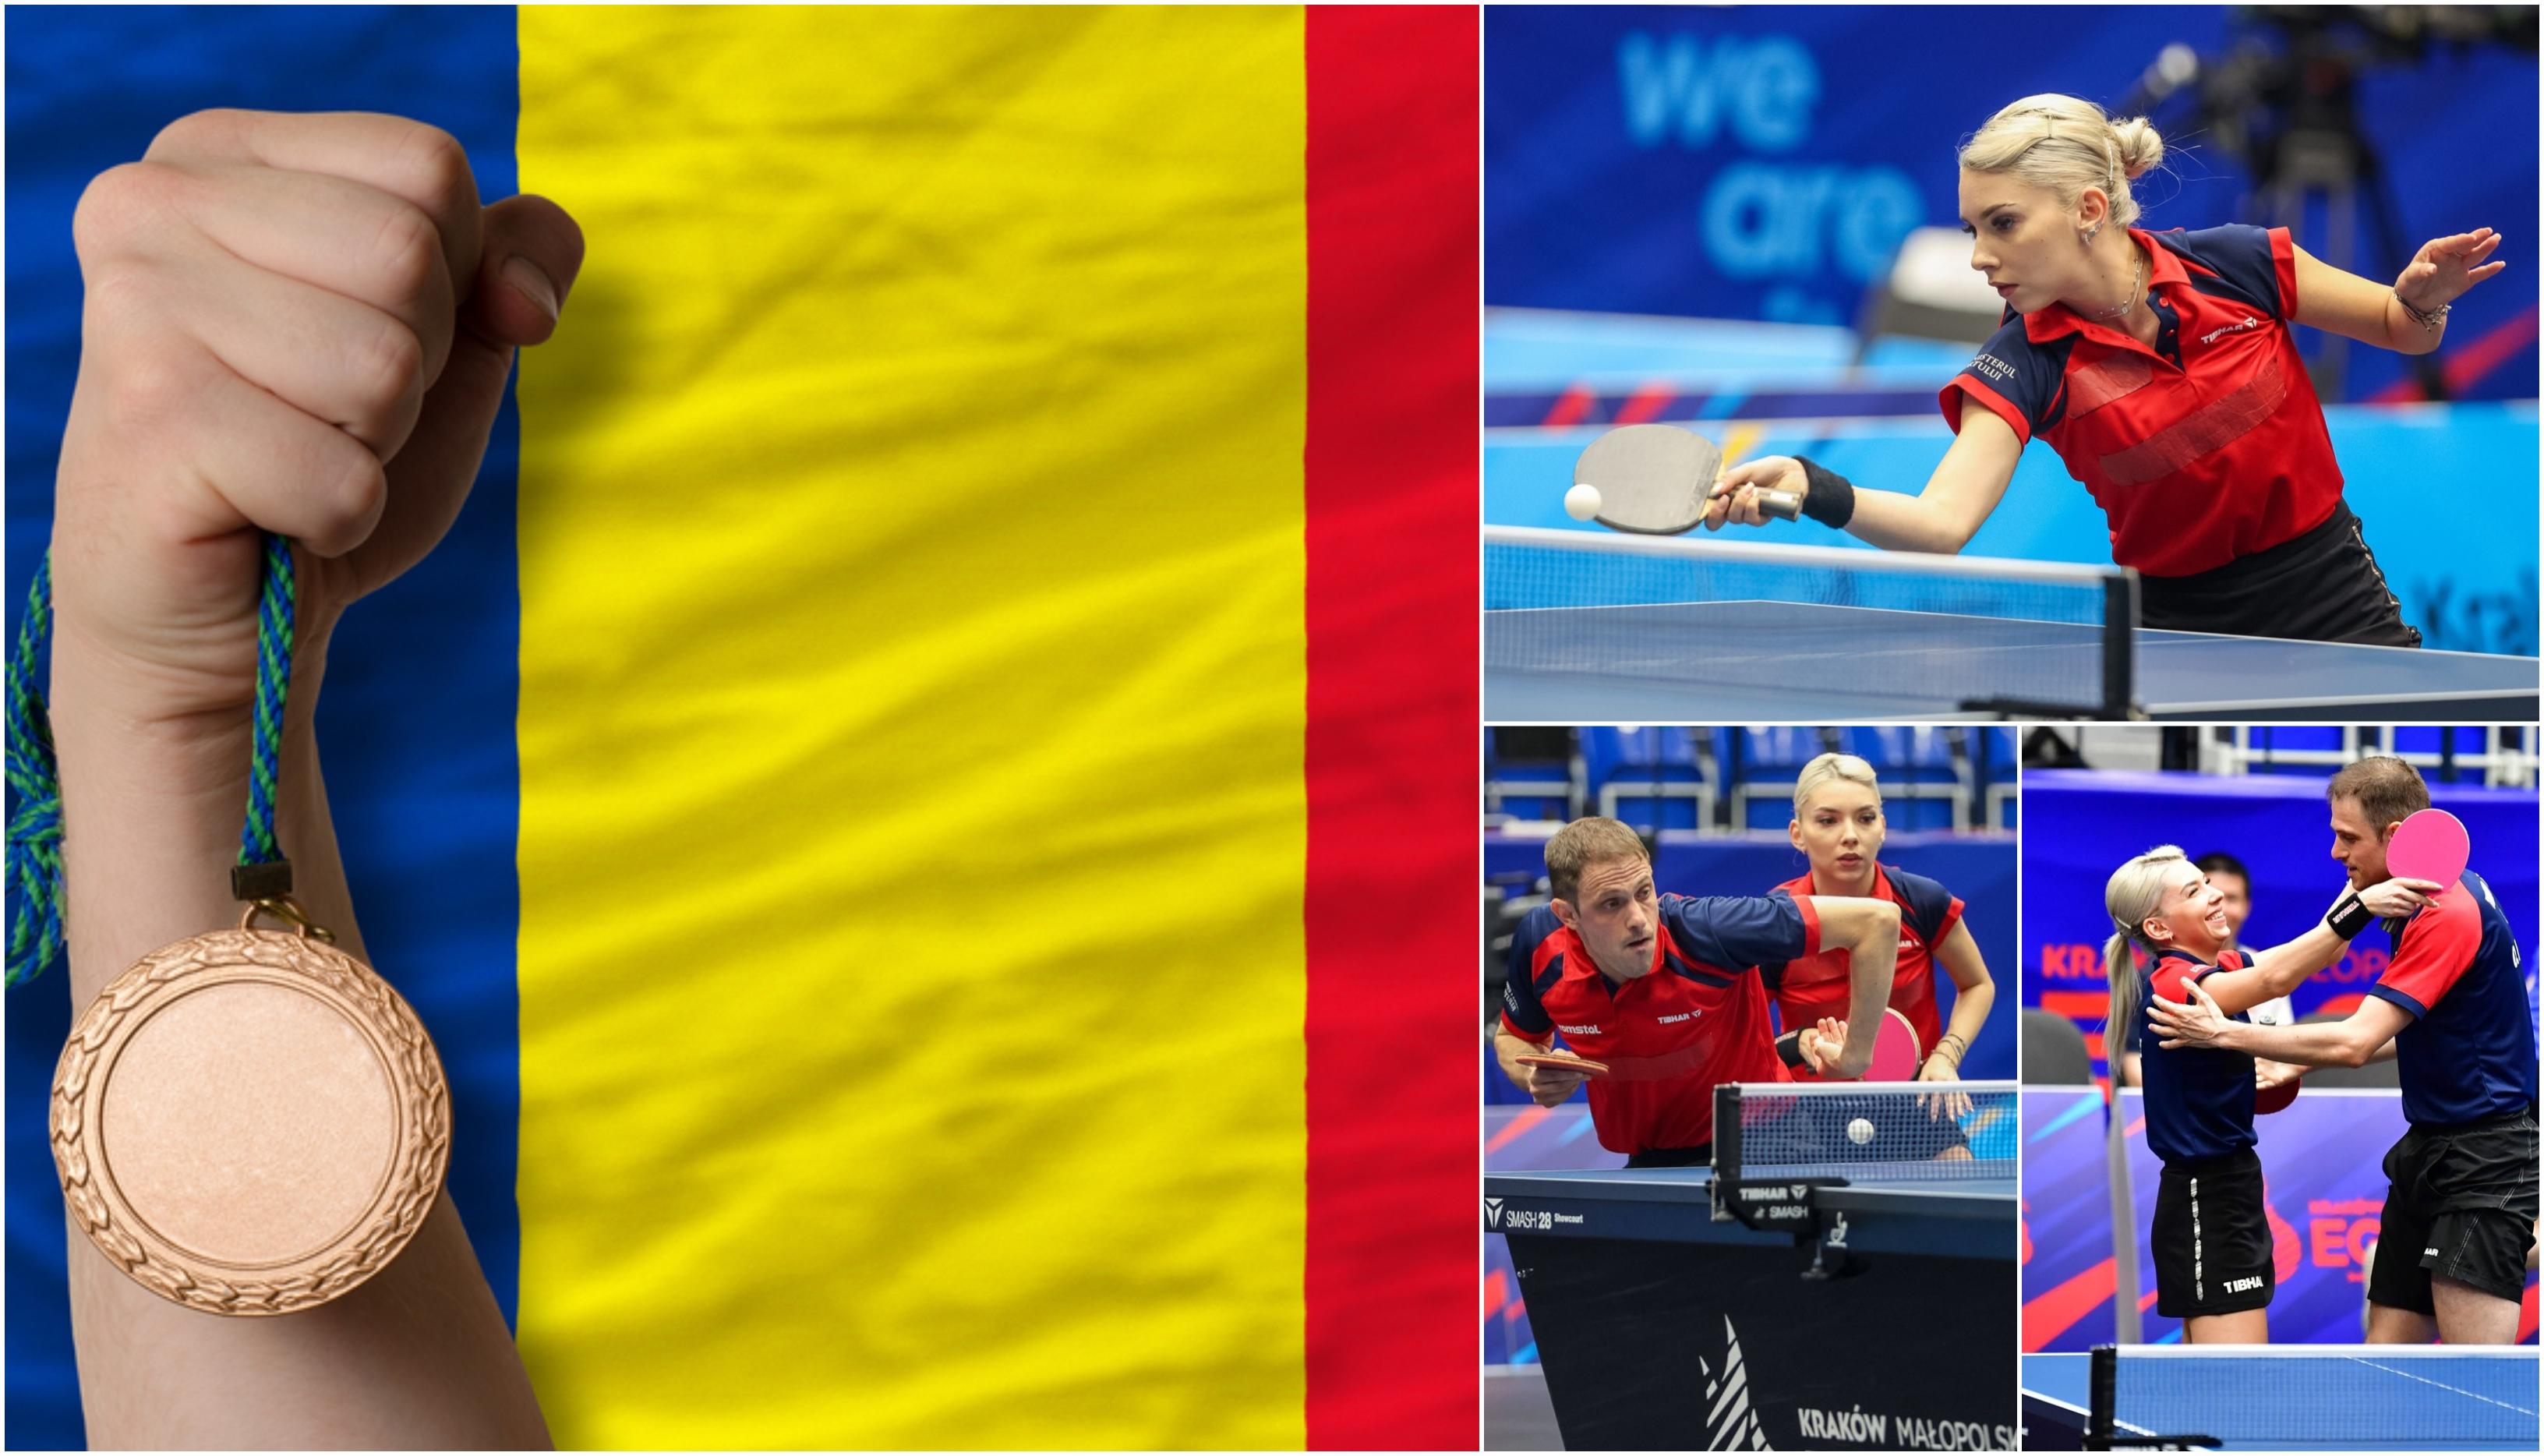 Bernadette Szocs și Ovidiu Ionescu au câştigat bronzul la tenis de masă mixt, la Jocurile Europene. Szocs a adus punctul decisiv